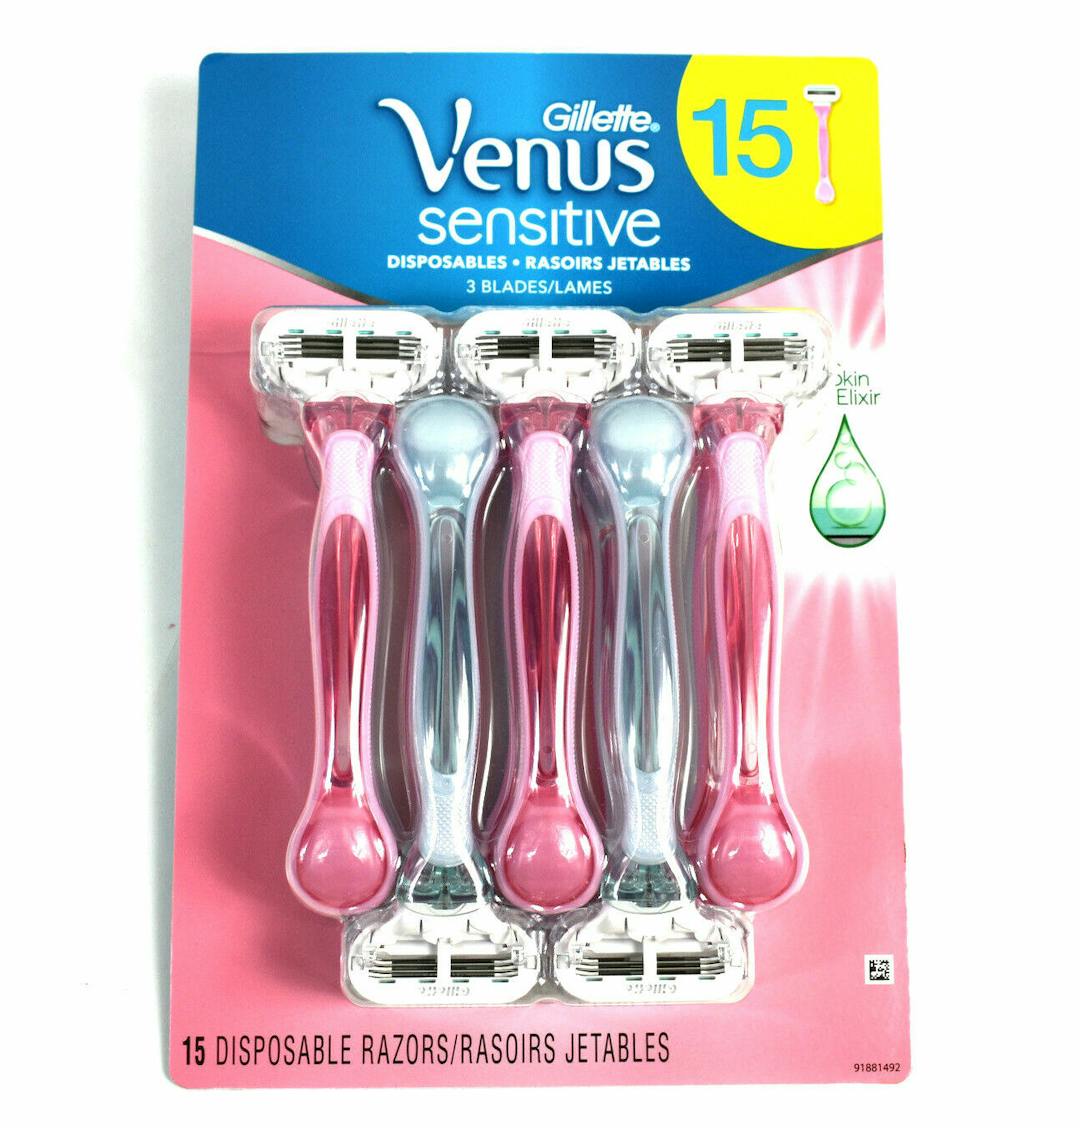 Gillette Venus Sensitive Disposable Razors 3 blades, 15-count